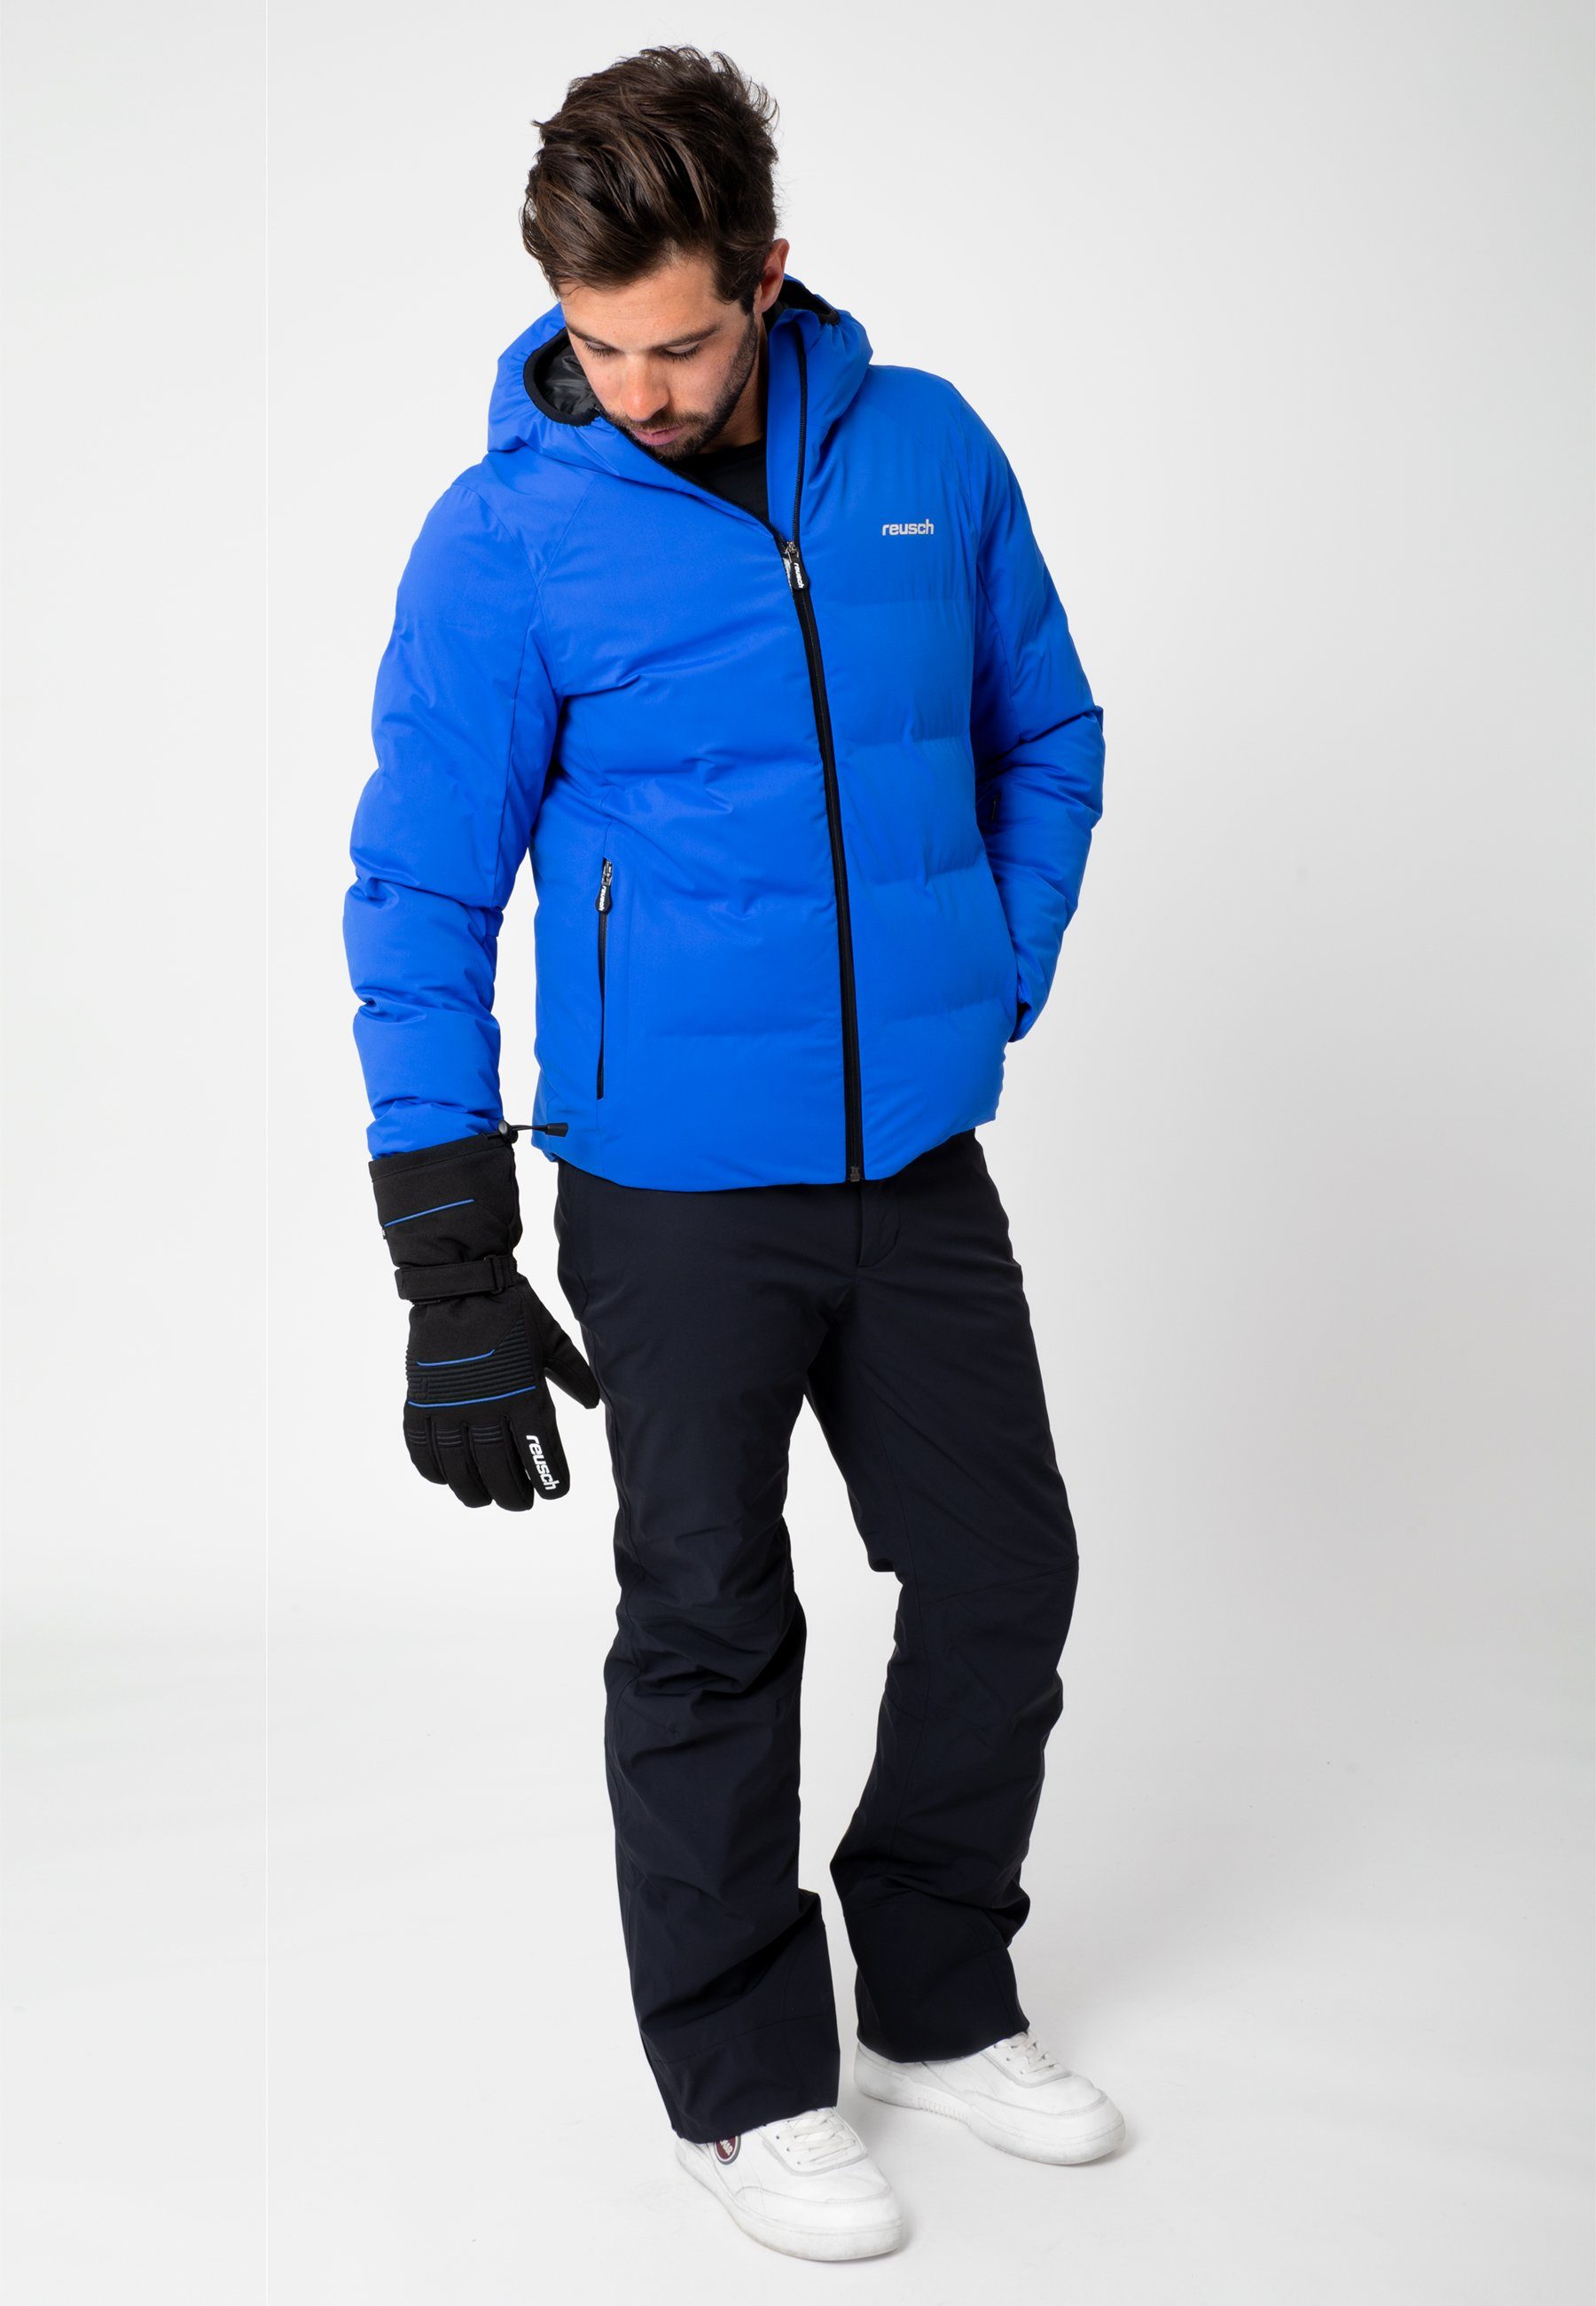 XT sportlichem Skihandschuhe Crosby Design in R-TEX® blau-schwarz Reusch